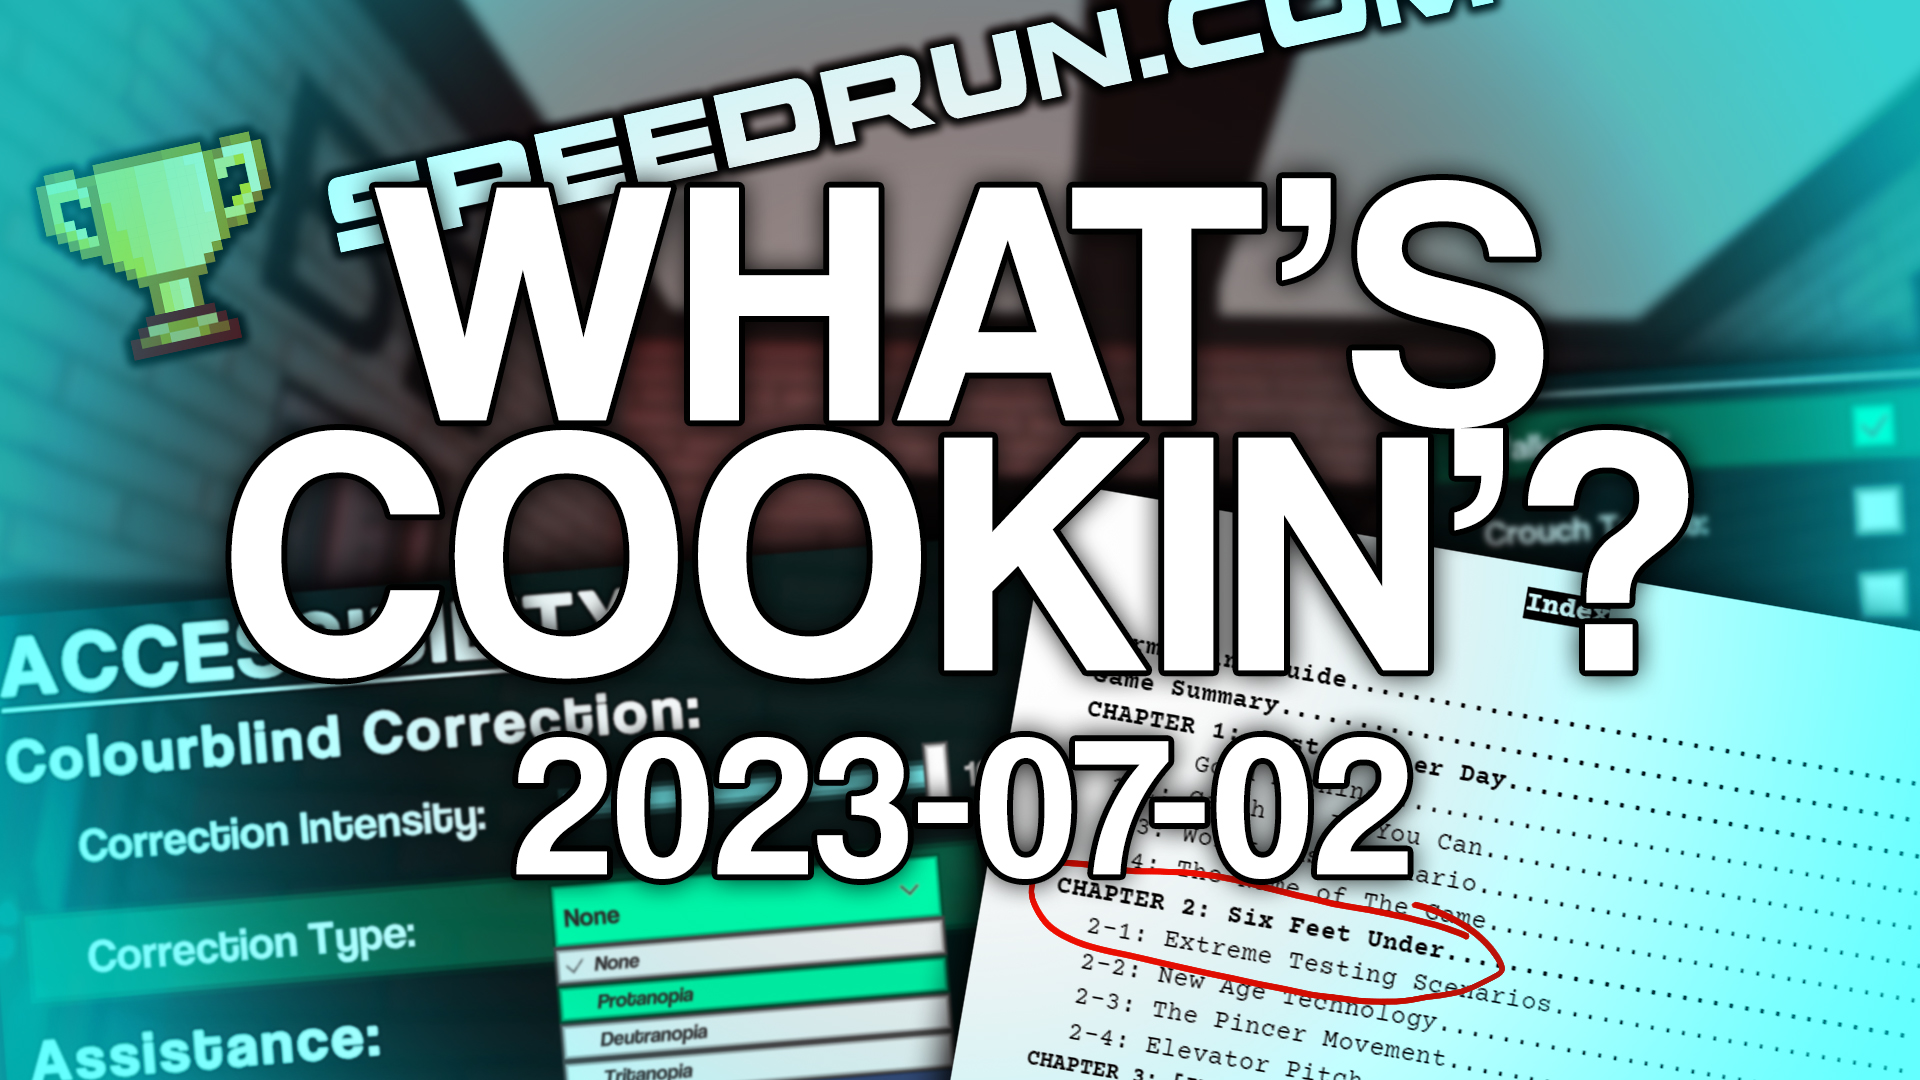 Cookin2023 07 02